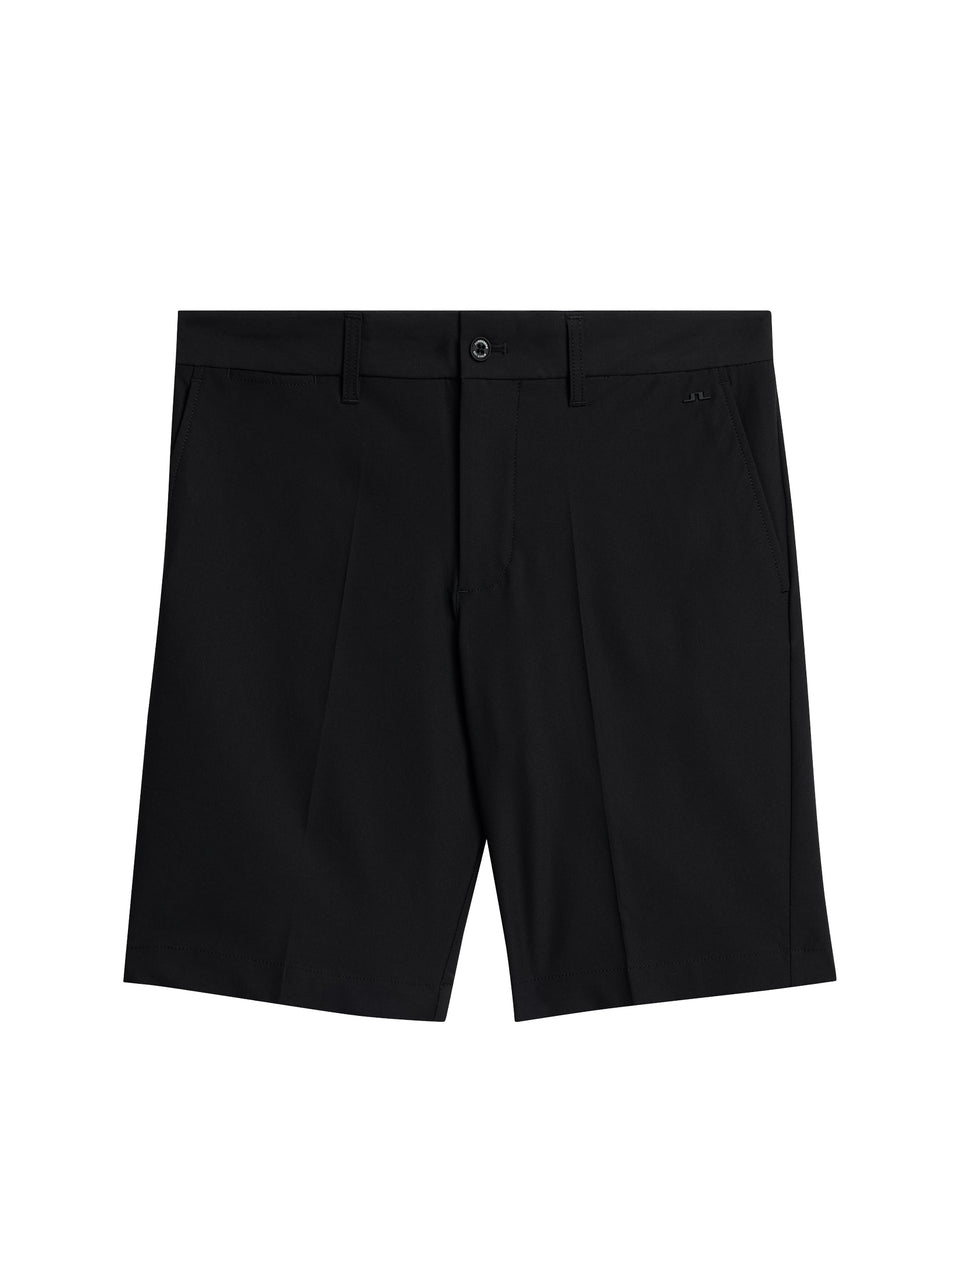 Eloy Shorts / Black